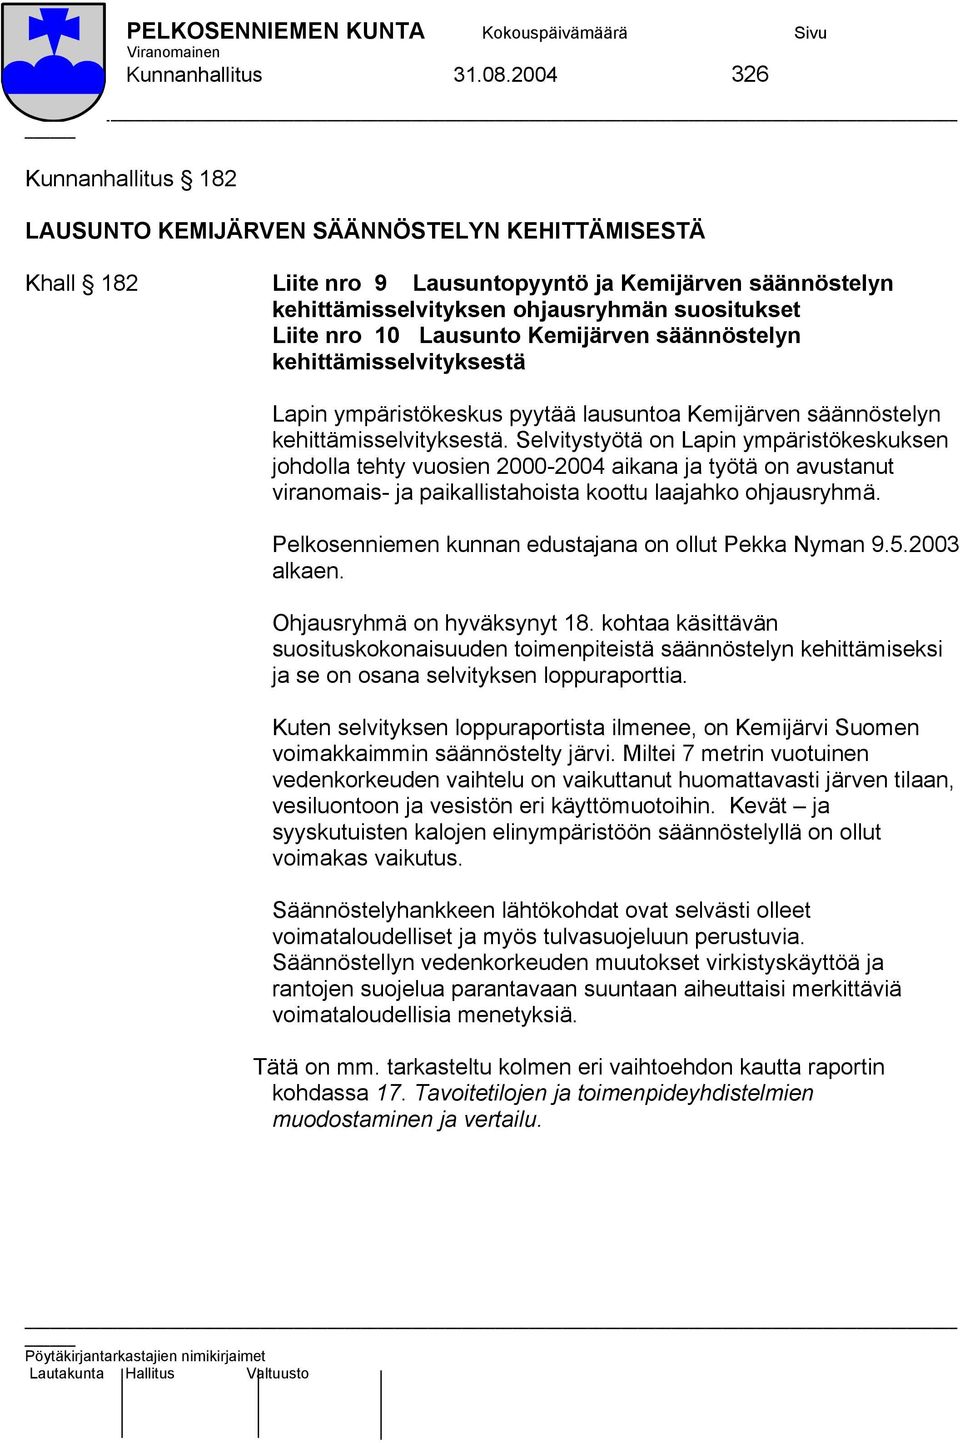 Lausunto Kemijärven säännöstelyn kehittämisselvityksestä Lapin ympäristökeskus pyytää lausuntoa Kemijärven säännöstelyn kehittämisselvityksestä.